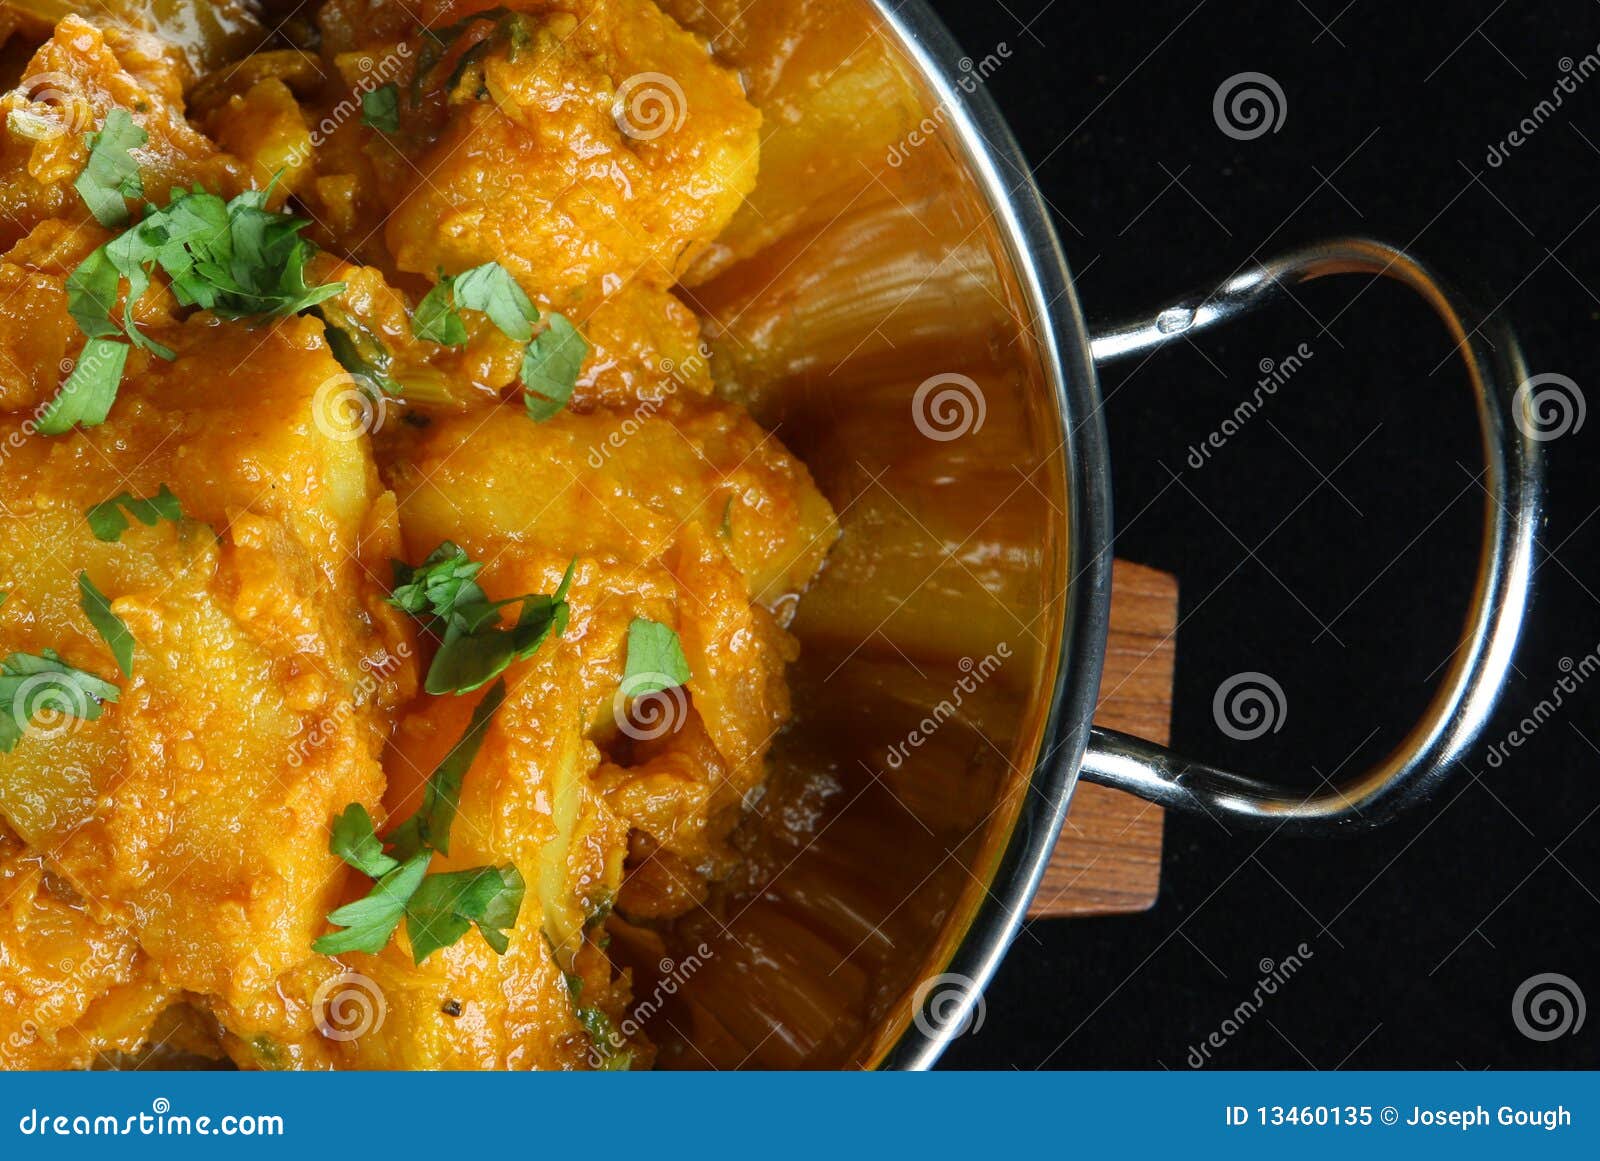 Indischer Kartoffel-Curry Bombay-Aloo Stockbild - Bild von nichtrostend ...